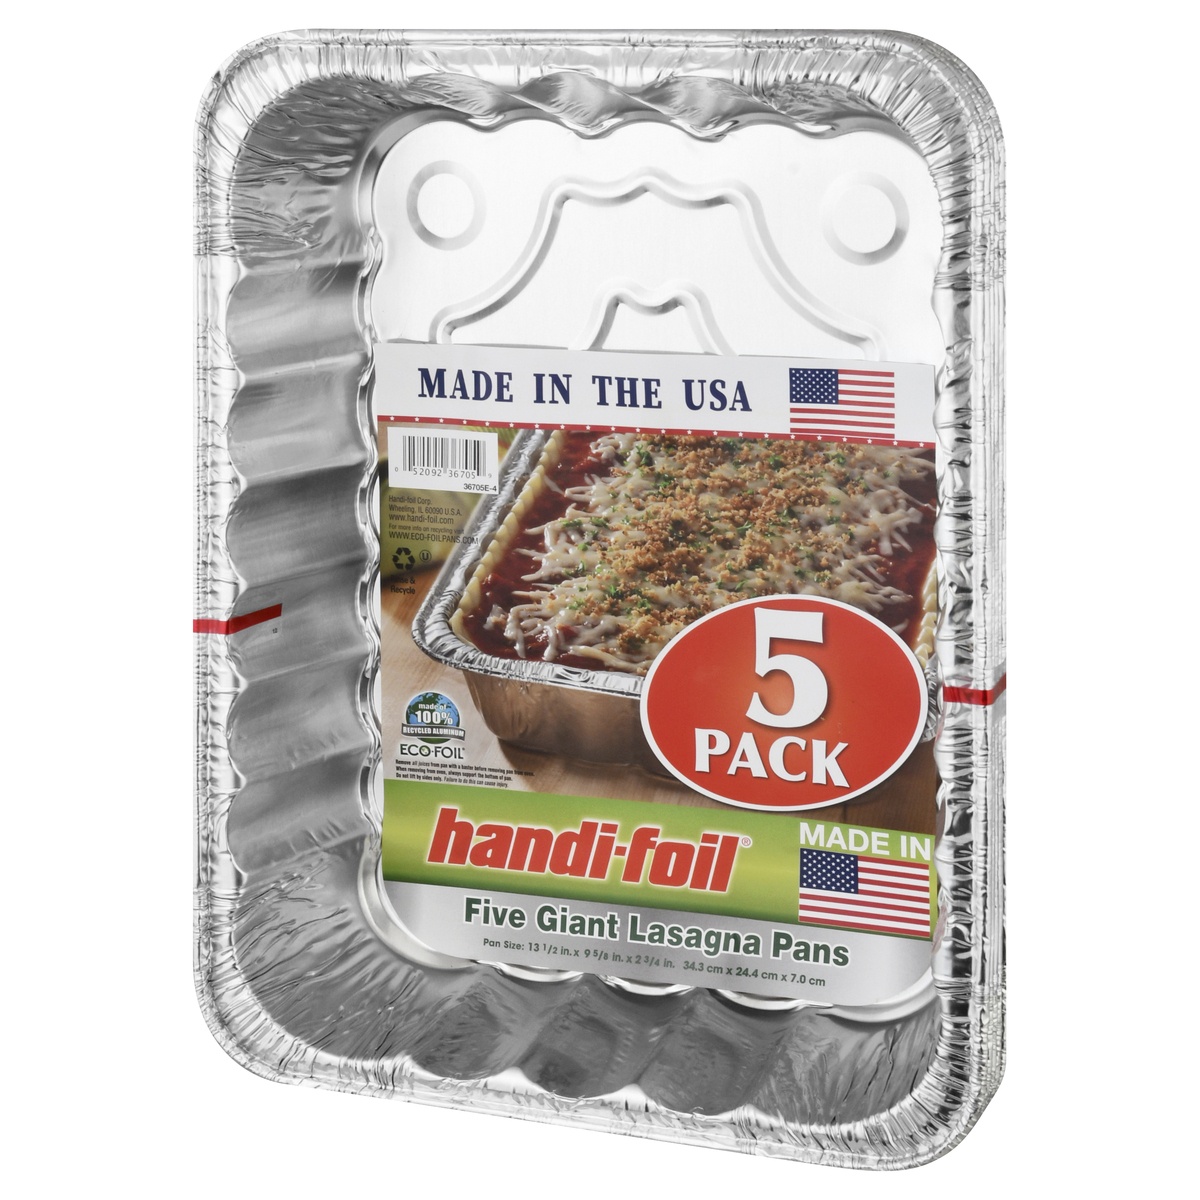 slide 3 of 8, Handi-foil Eco-Foil Lasagna Pan 5 Pack 135 X 9625 X 275 Inch, 5 ct